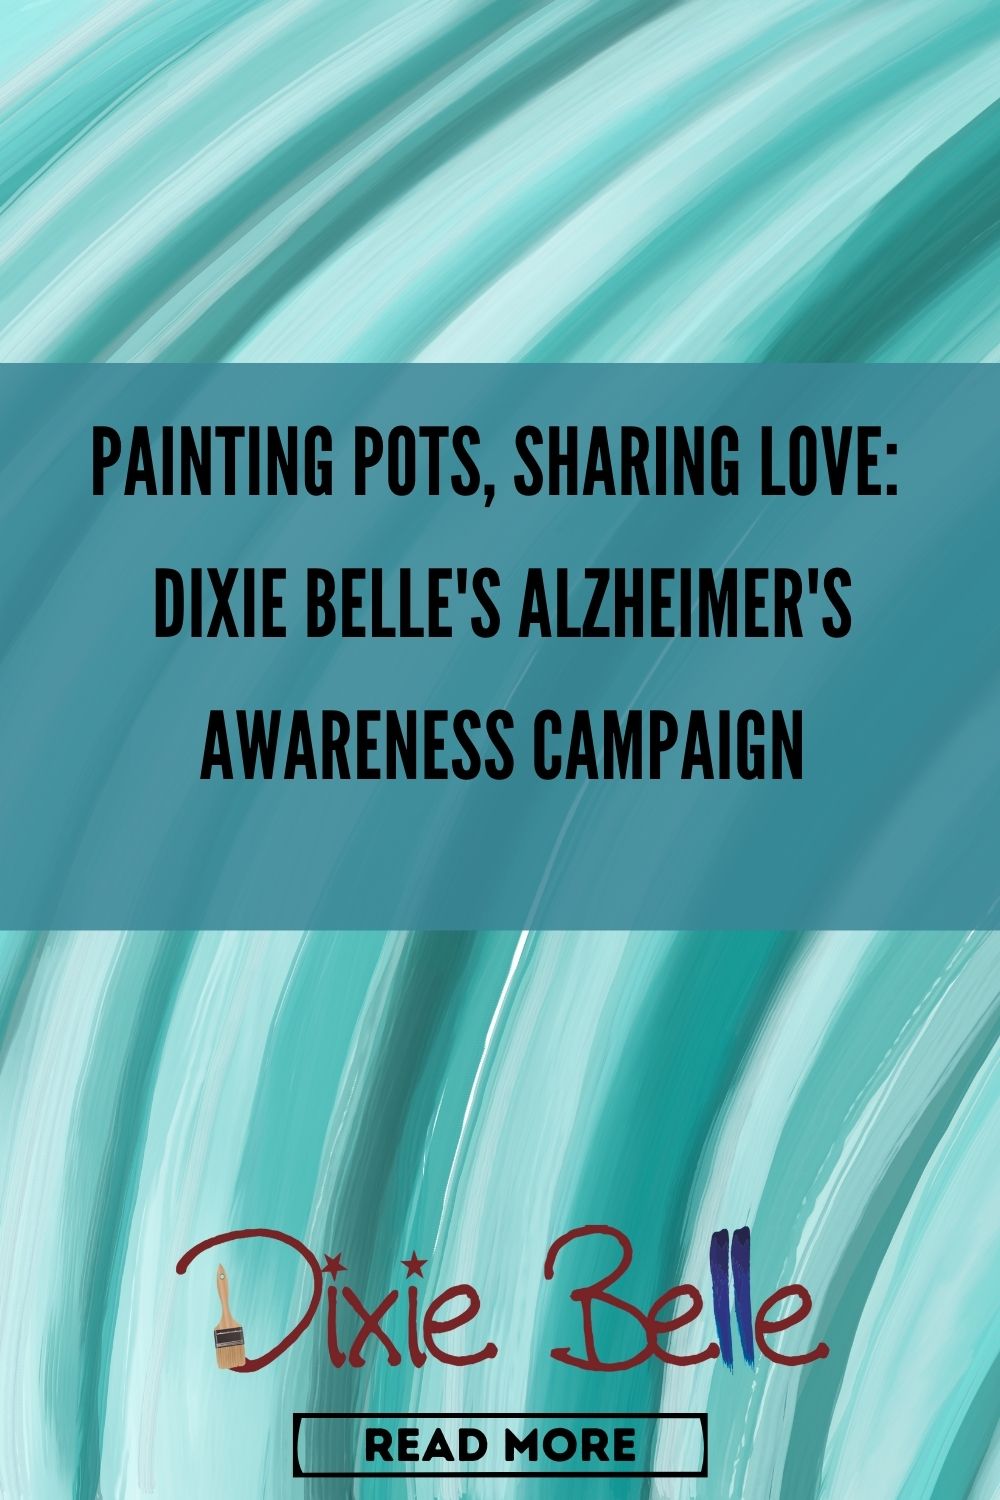 Dixie Belle Paint Pinterest Blog Image